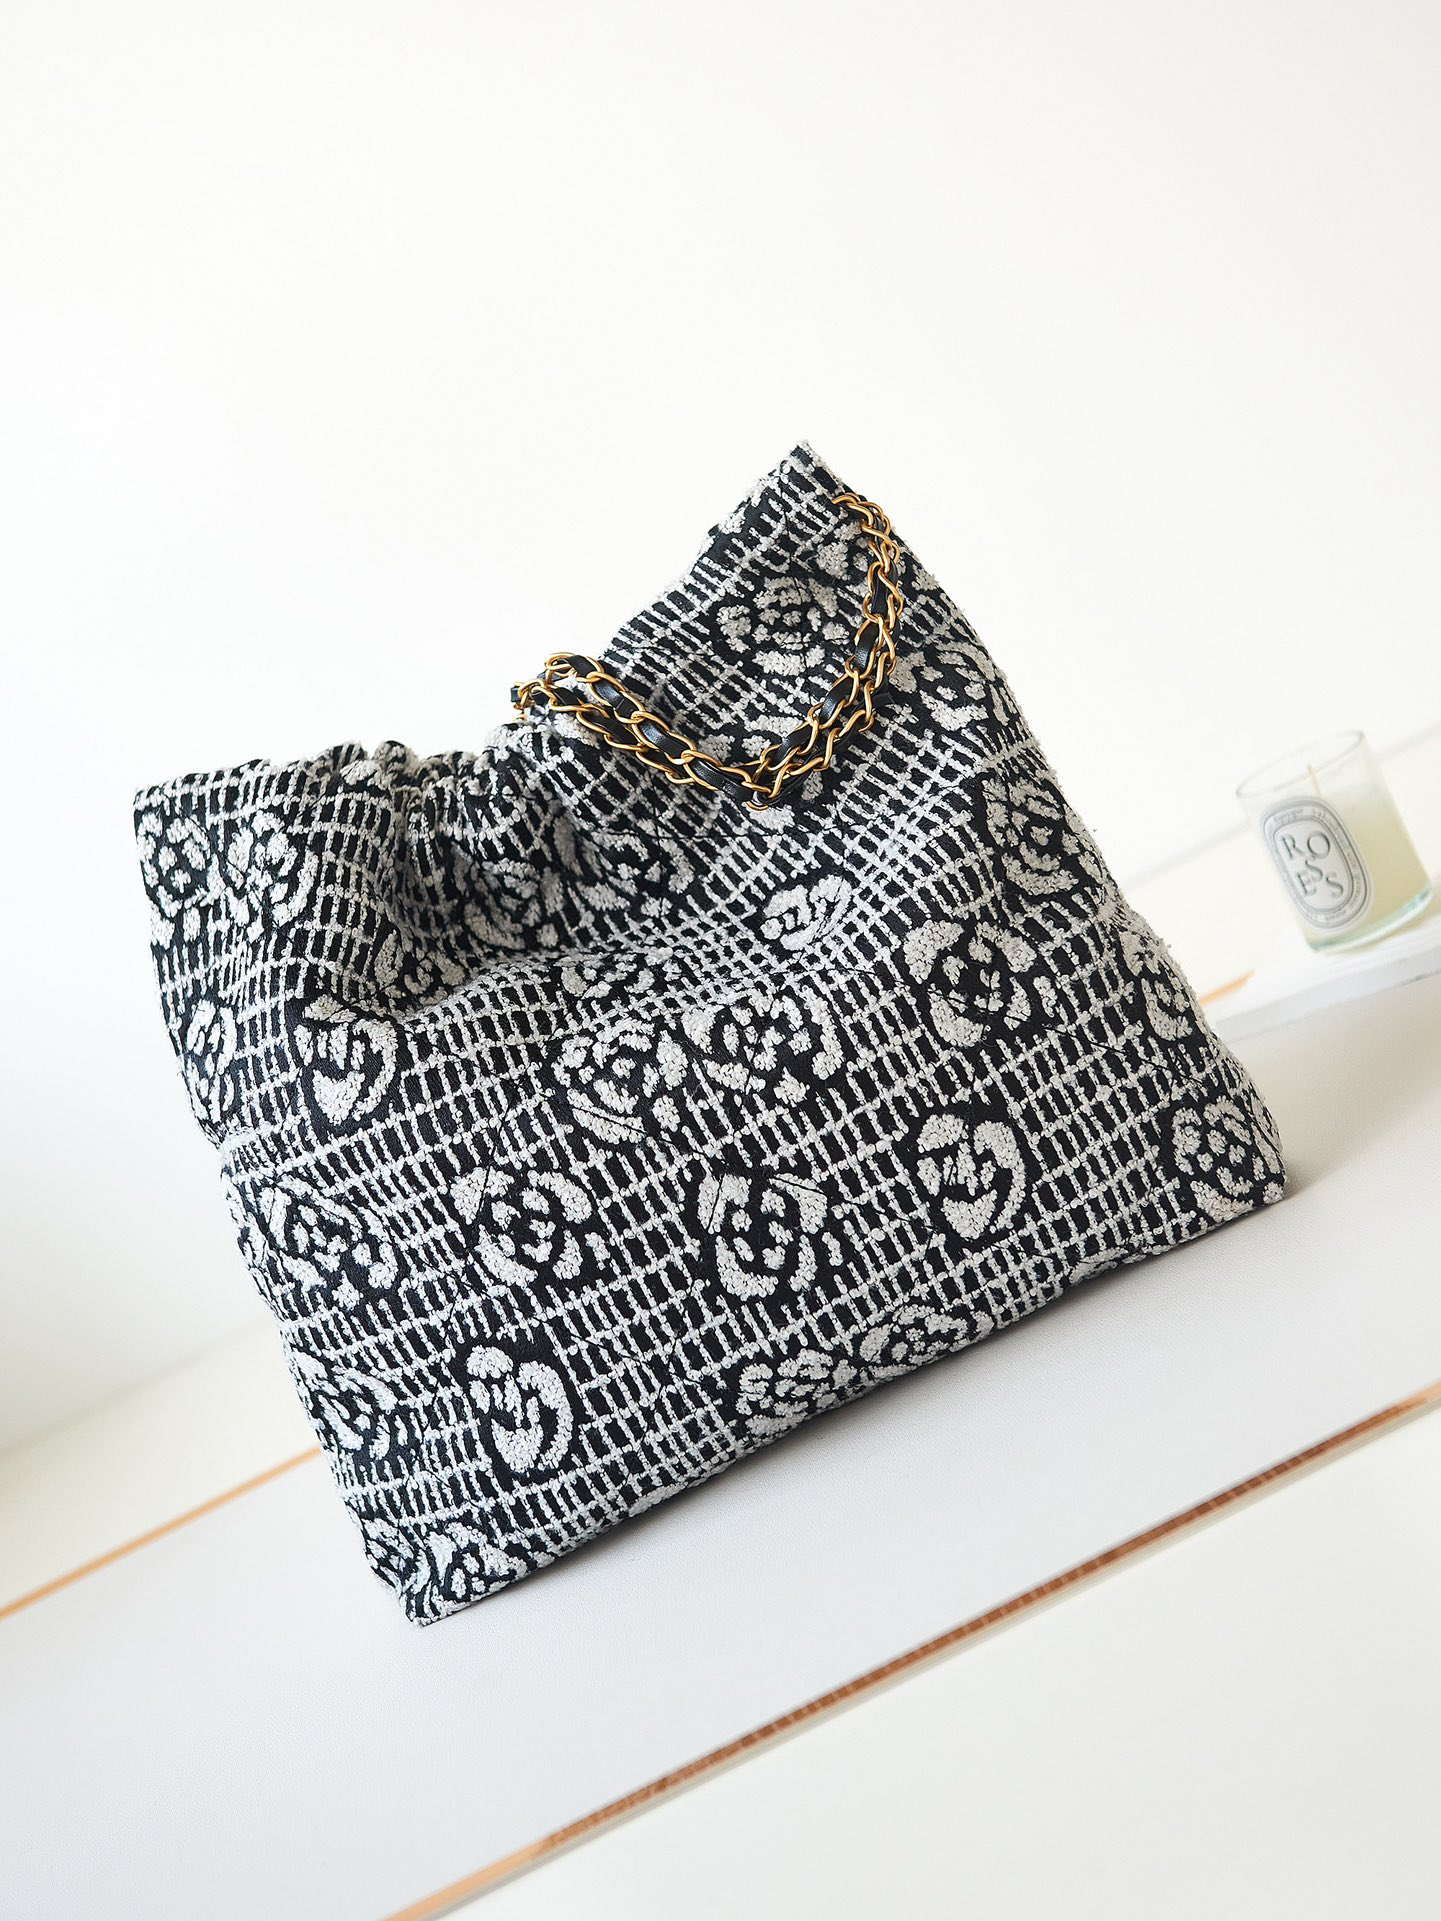 chanel-22-handbag-shiny-as3261-white-black-velvet-gold-005-luxibags.ru